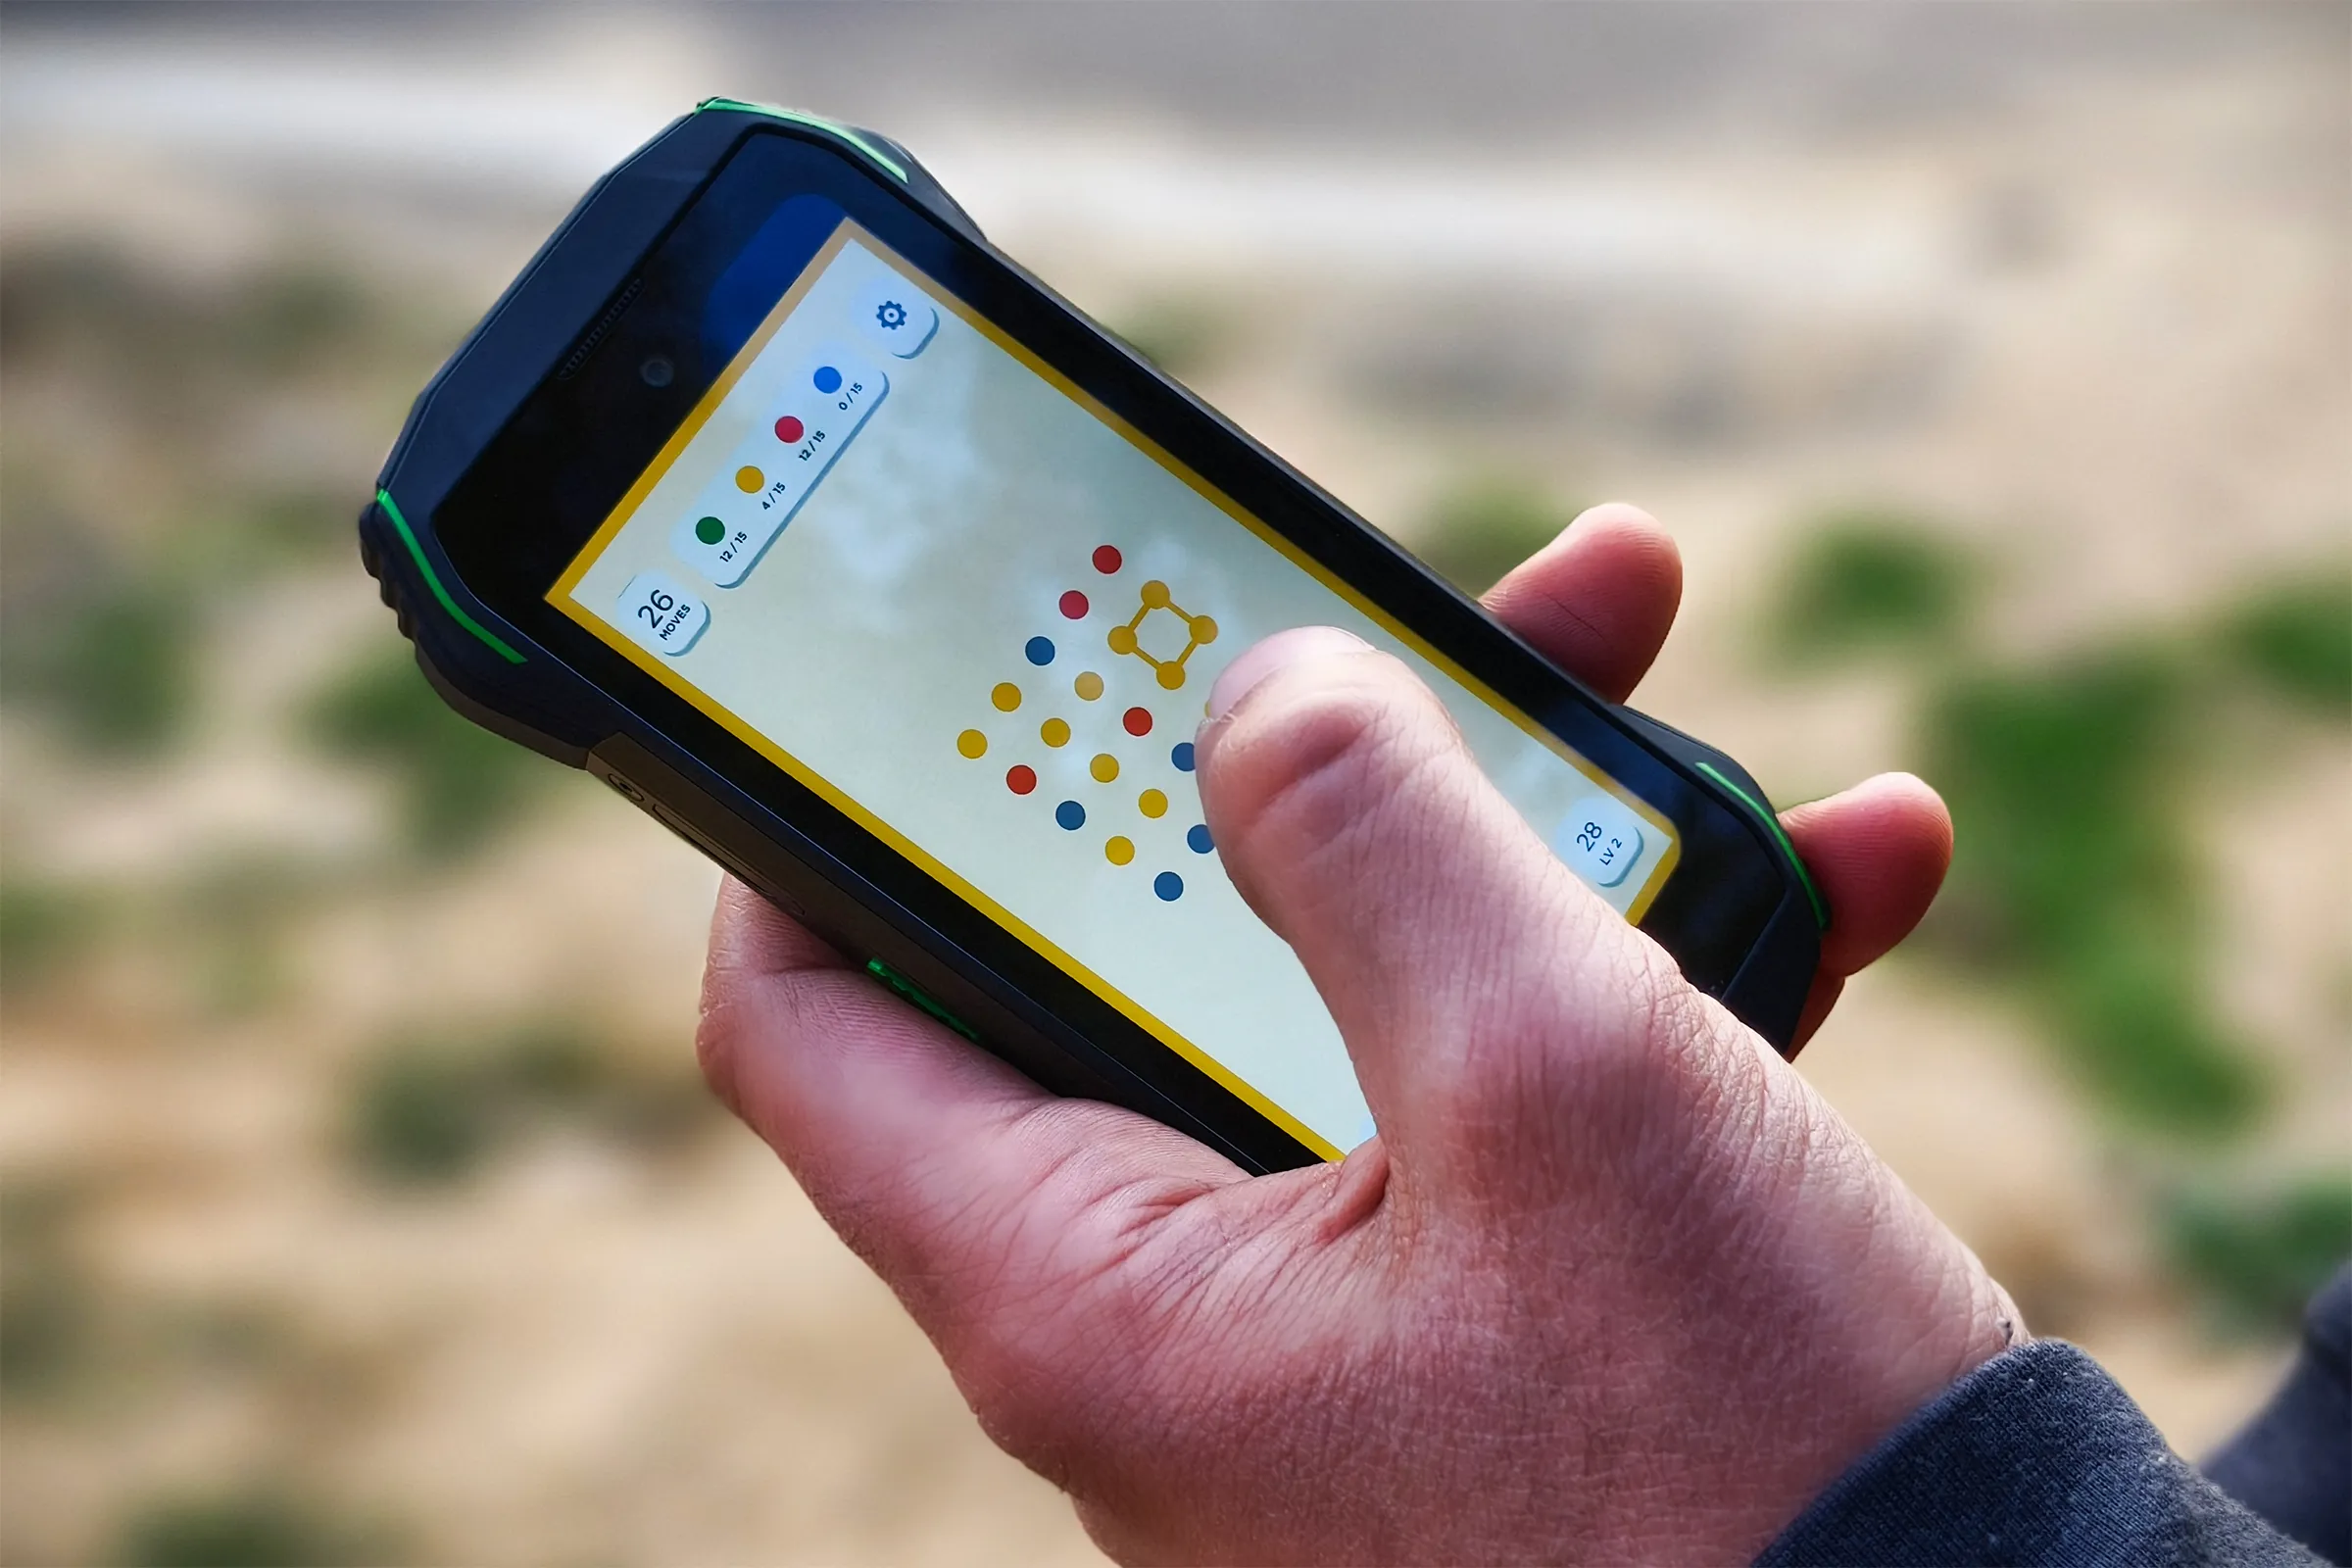 Juego Two Dots en el pequeño teléfono Android resistente Blackview N6000 sostenido en la mano de una persona.